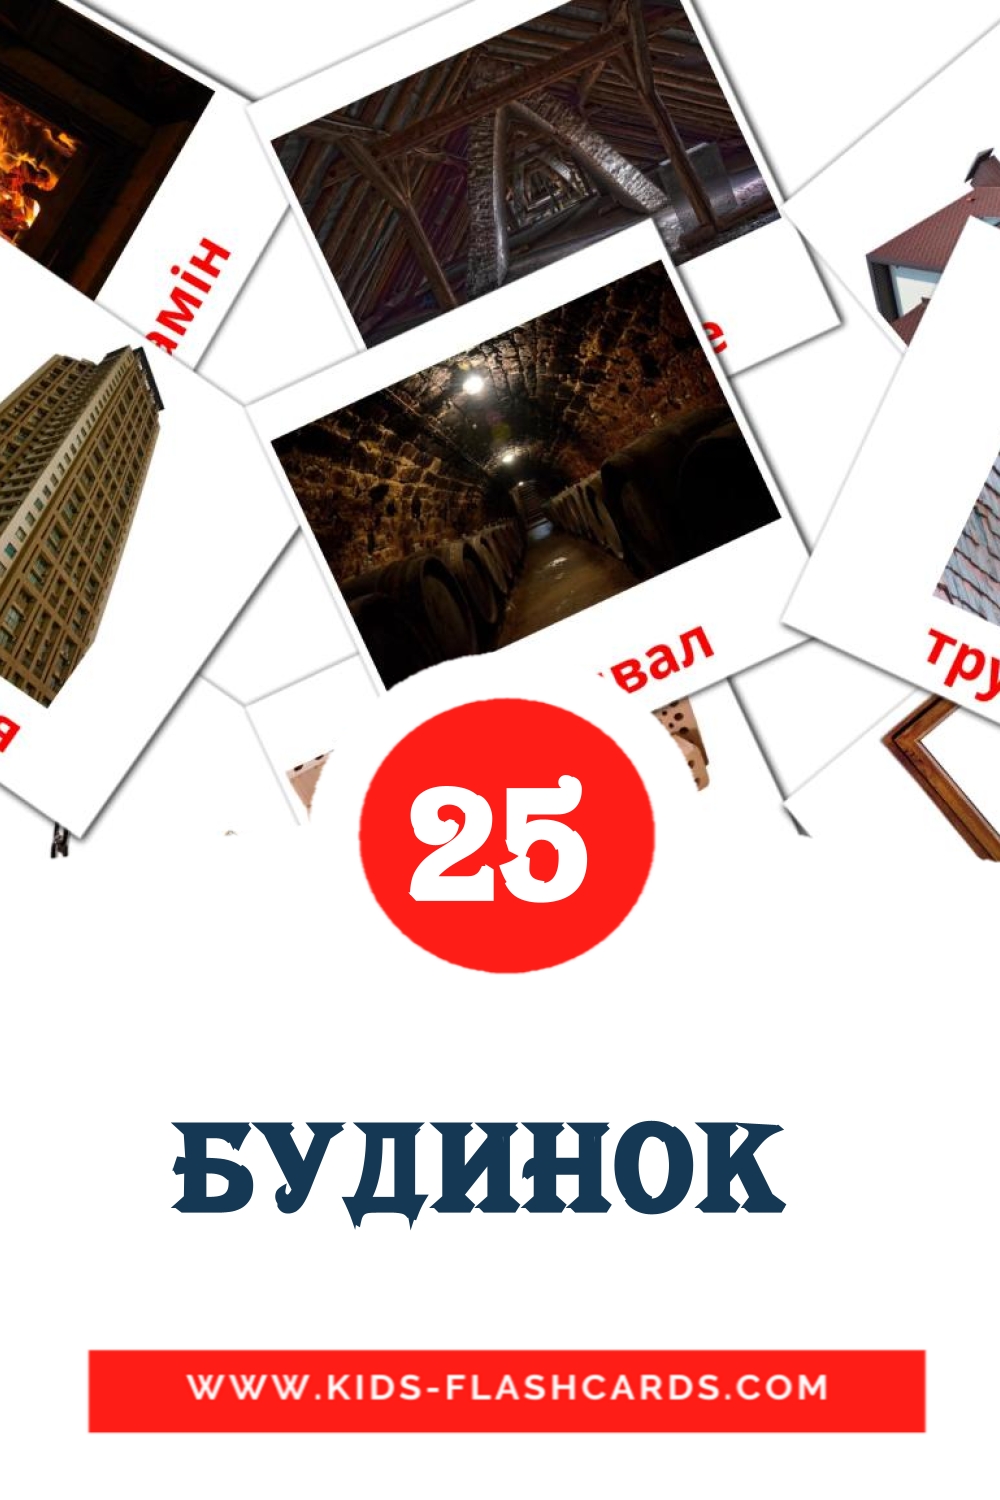 Будинок  на украинском для Детского Сада (25 карточек)